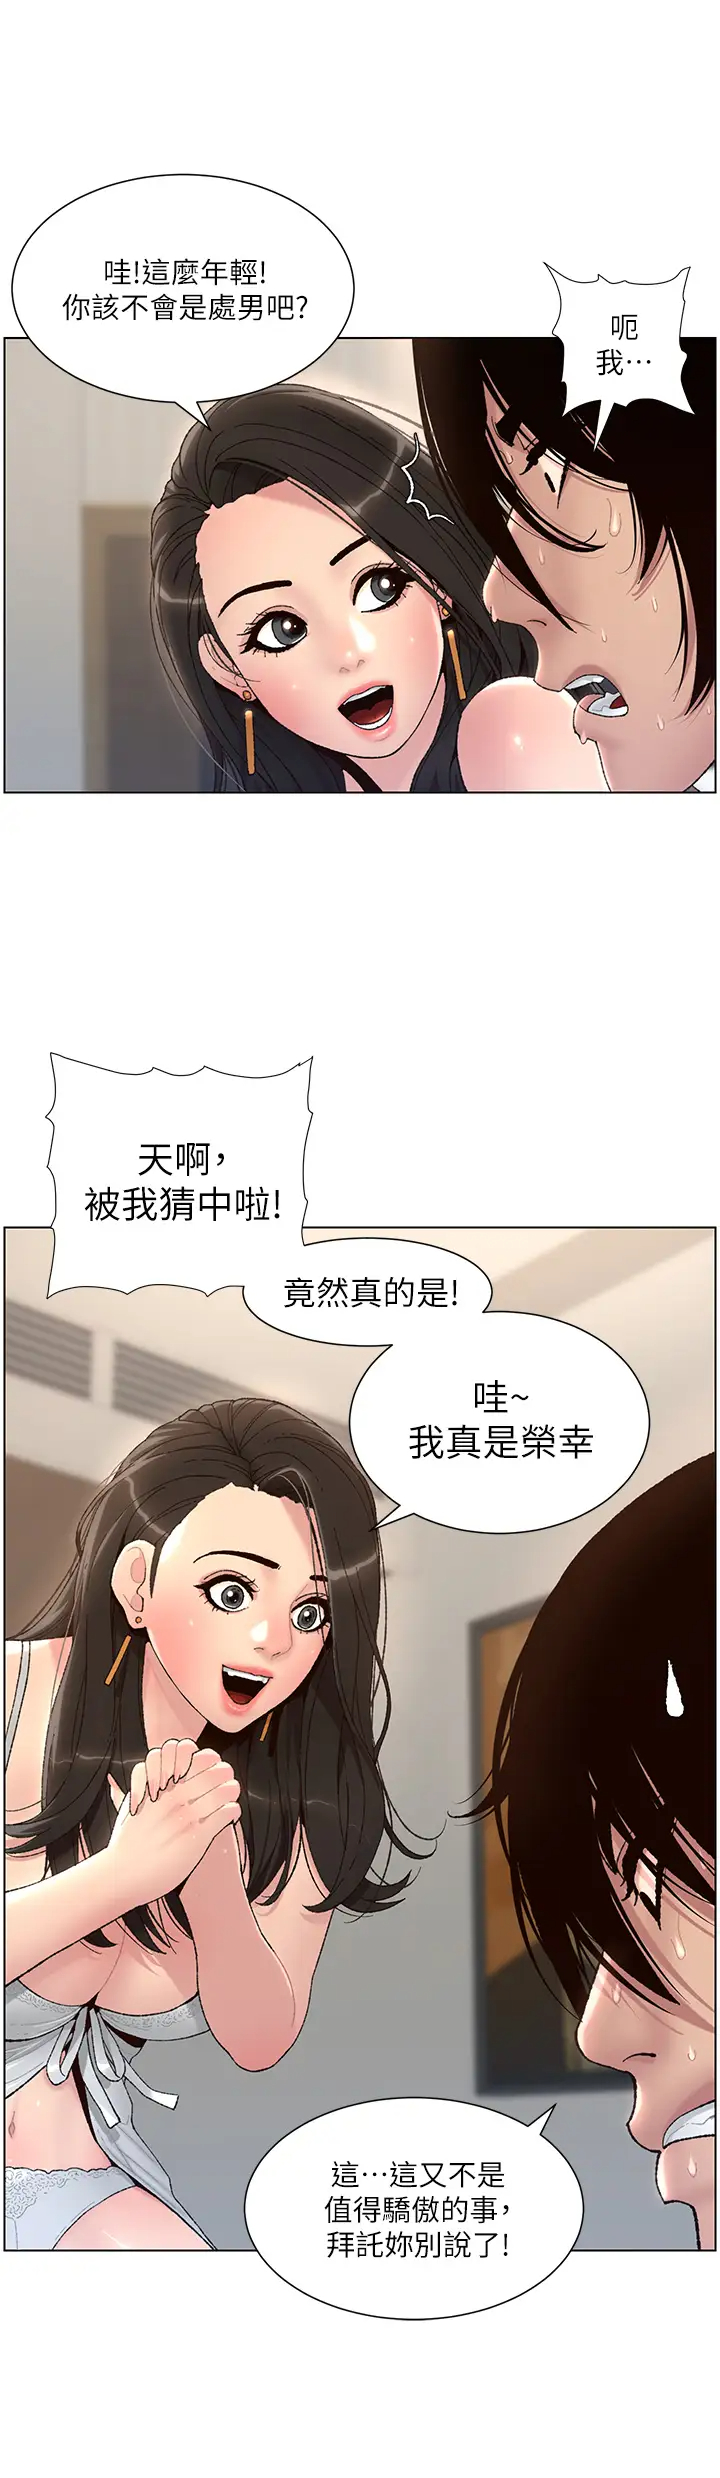 韩国污漫画 帝王App 第1话 逆转人生的「鸡」会 30